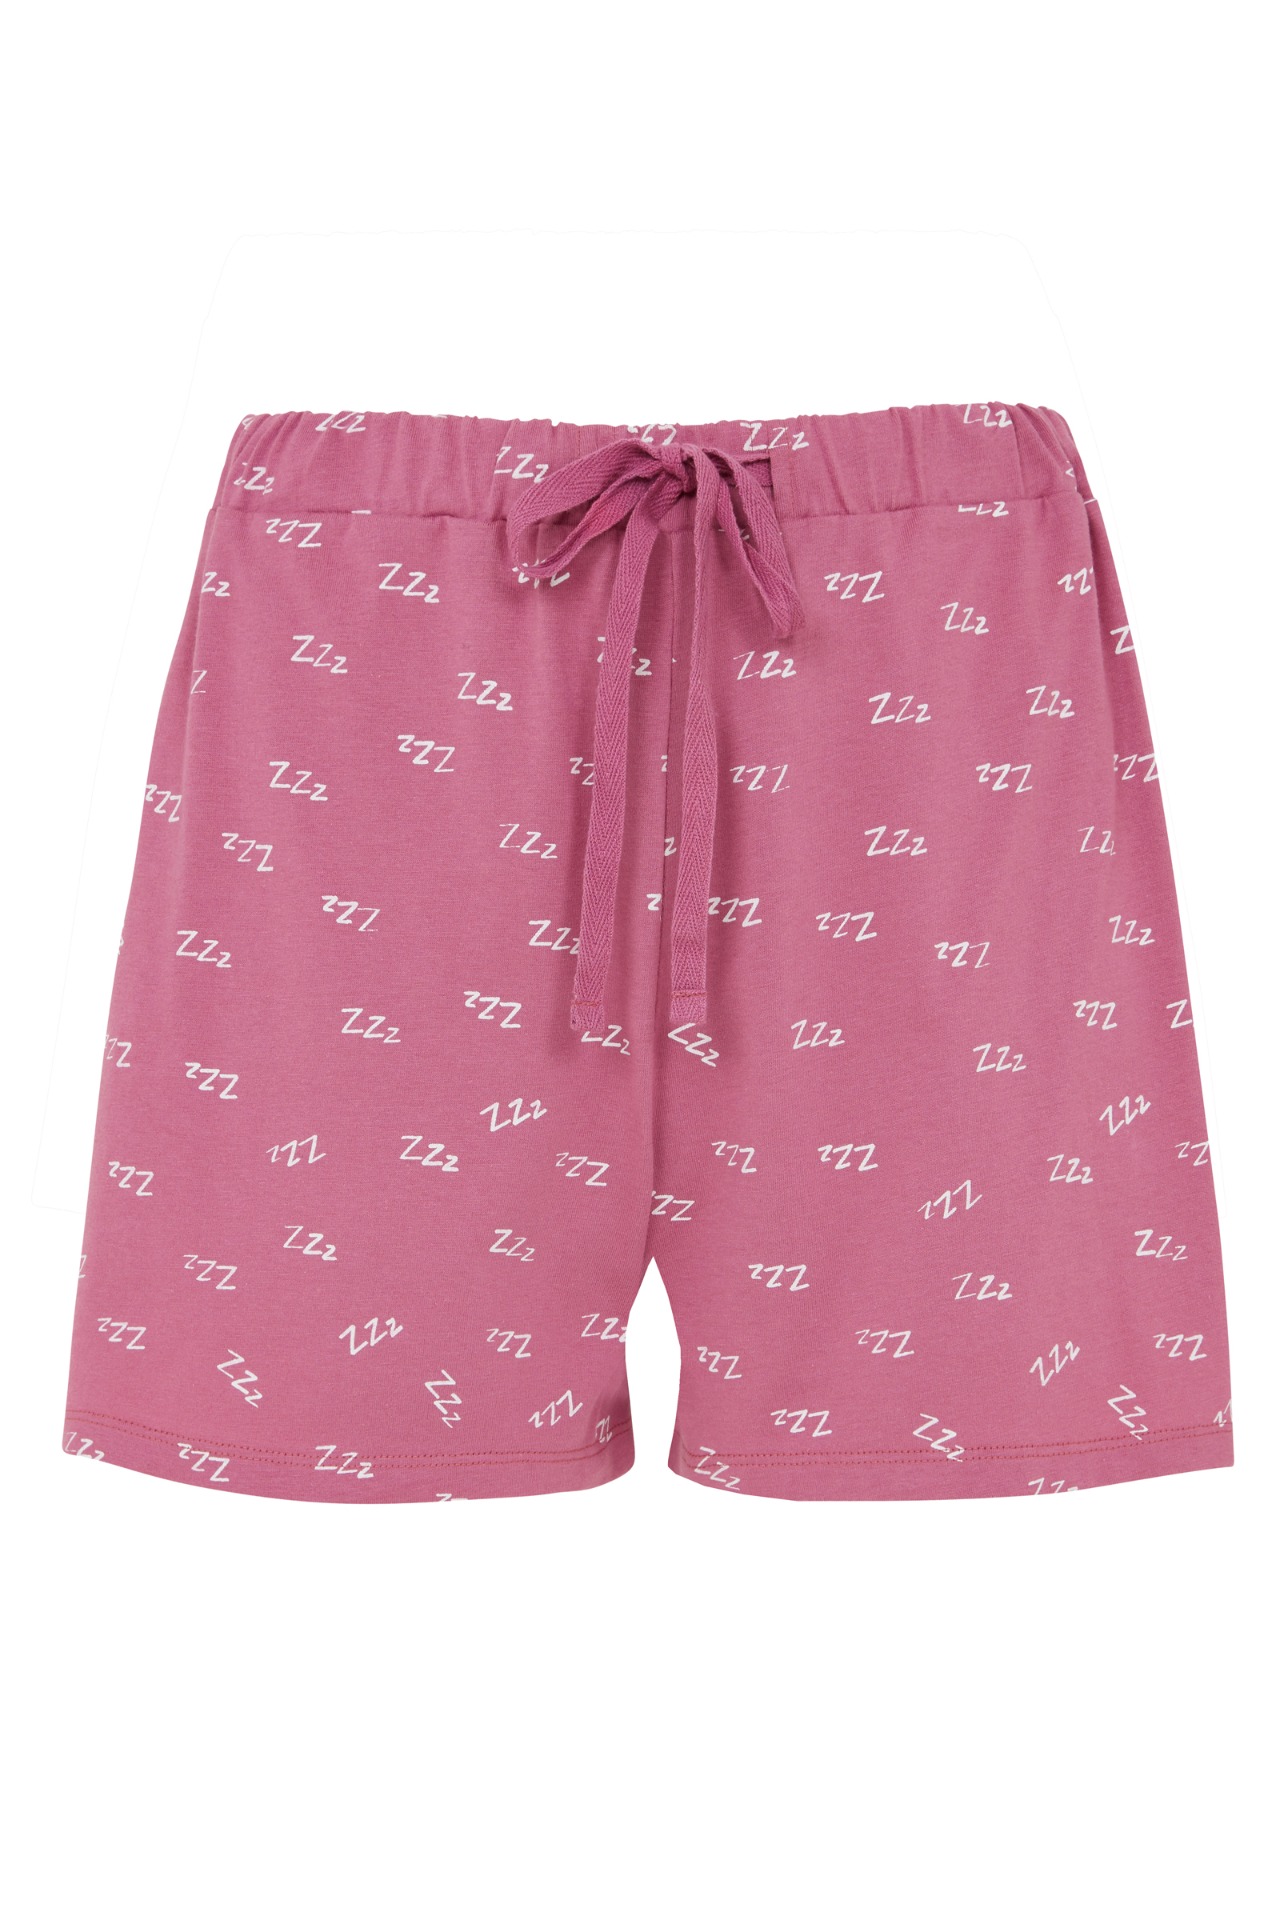 zzzs-pyjama-shorts-5a05bffa1c7a-7.jpg